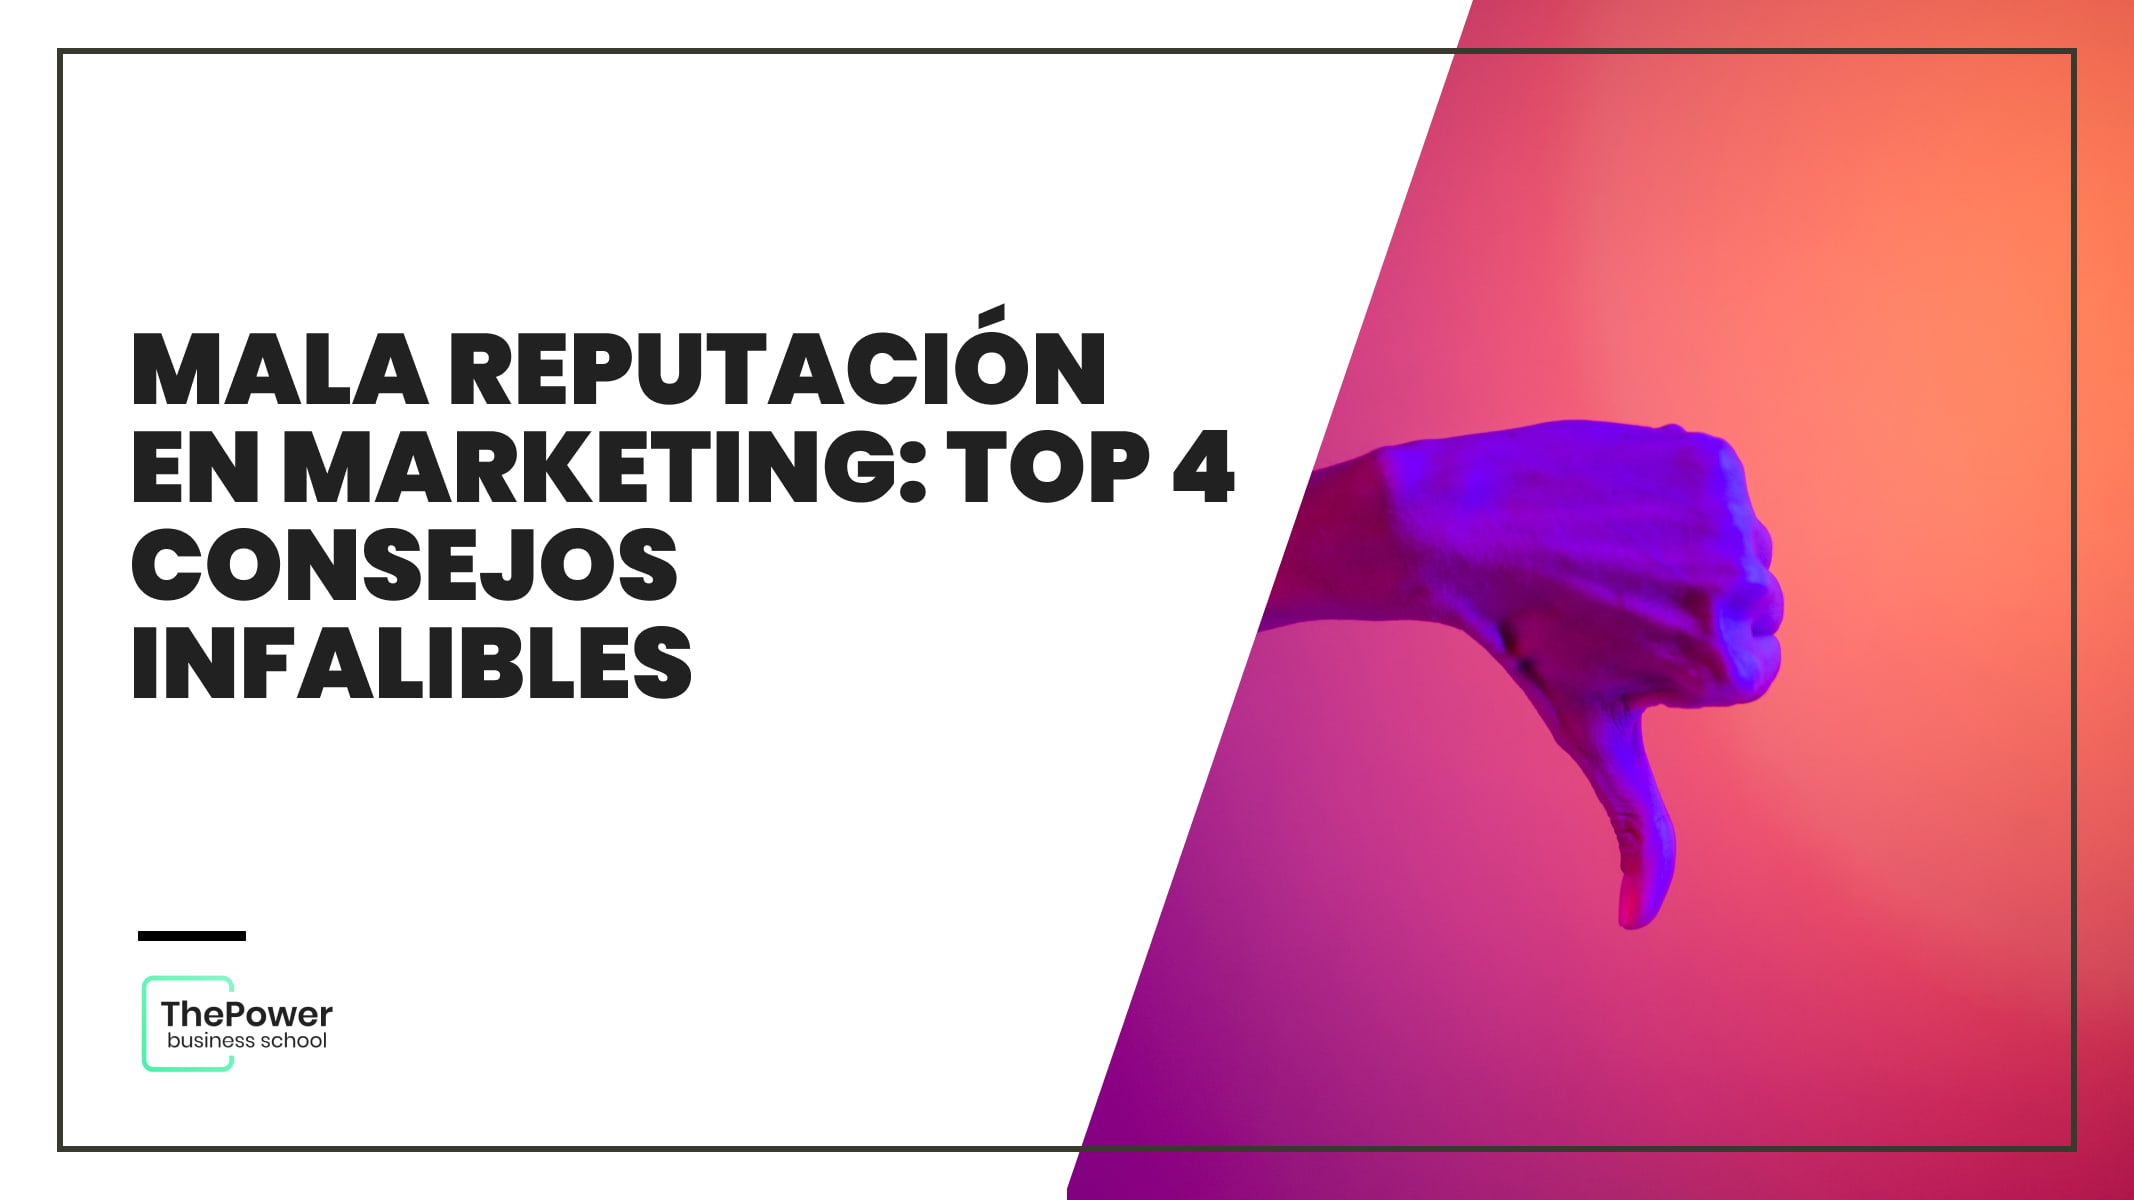 Mala reputación en marketing: TOP 4 consejos infalibles